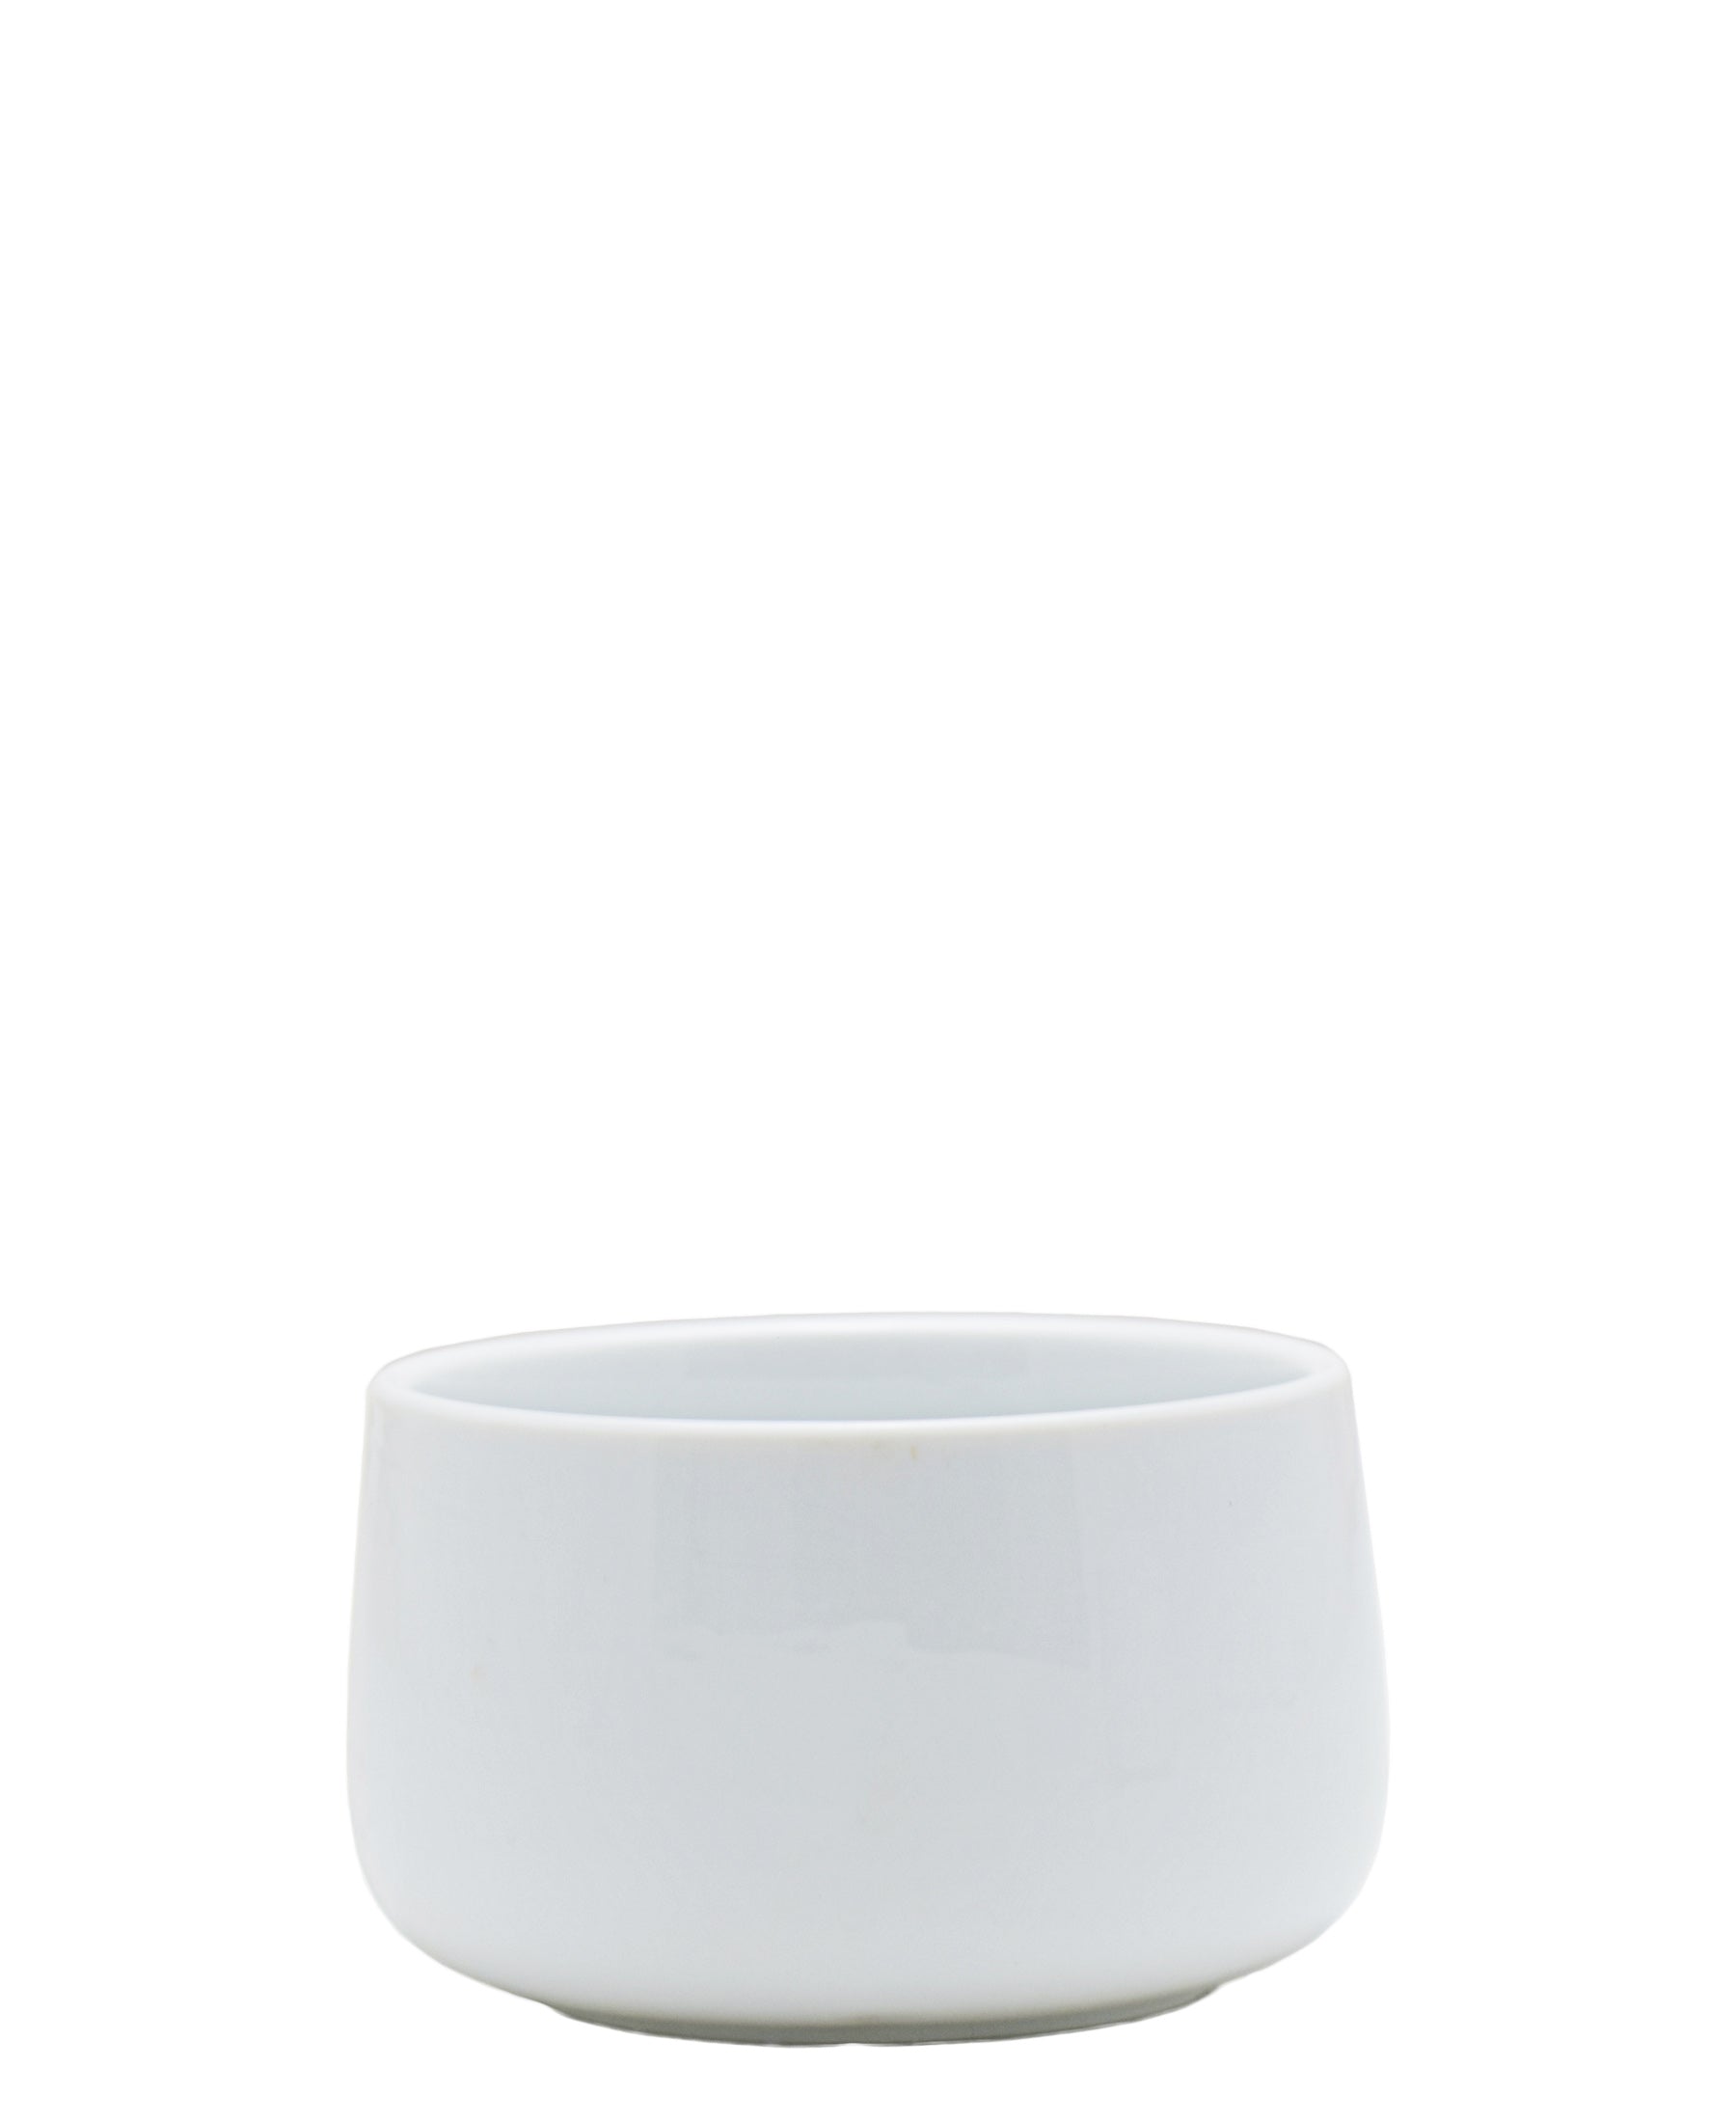 Eetrite 4 Piece Mini Bowl Set - White